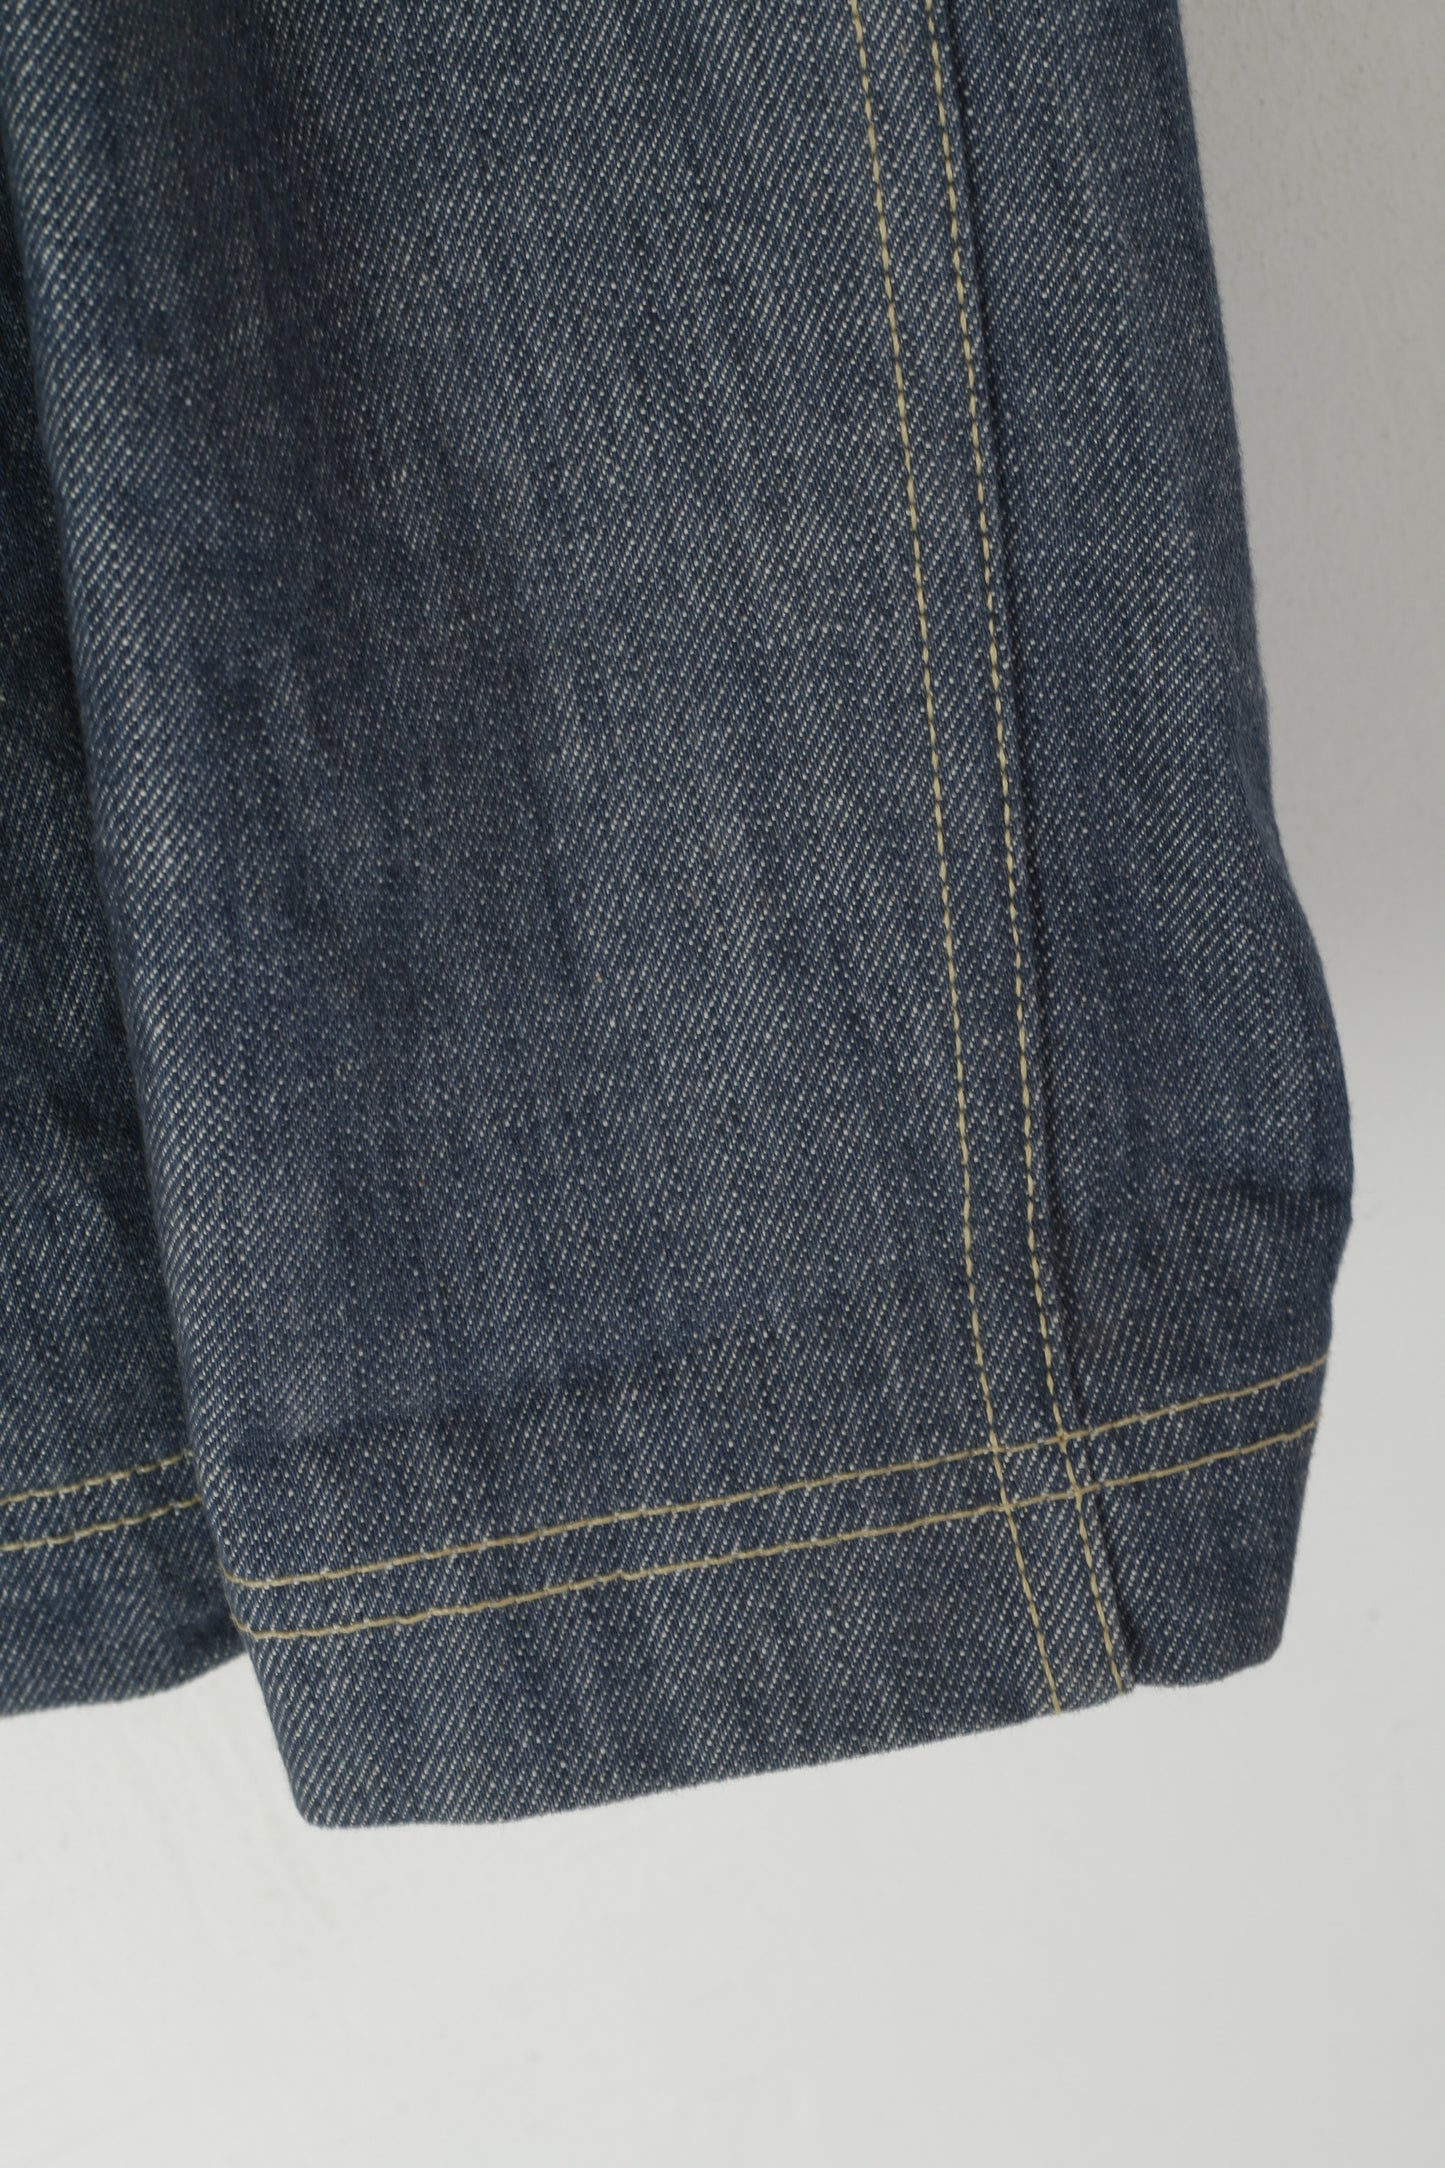 Tommy Hilfiger Denim Men S Jacket Blue Cotton Jeans East Coast Buttoned Top